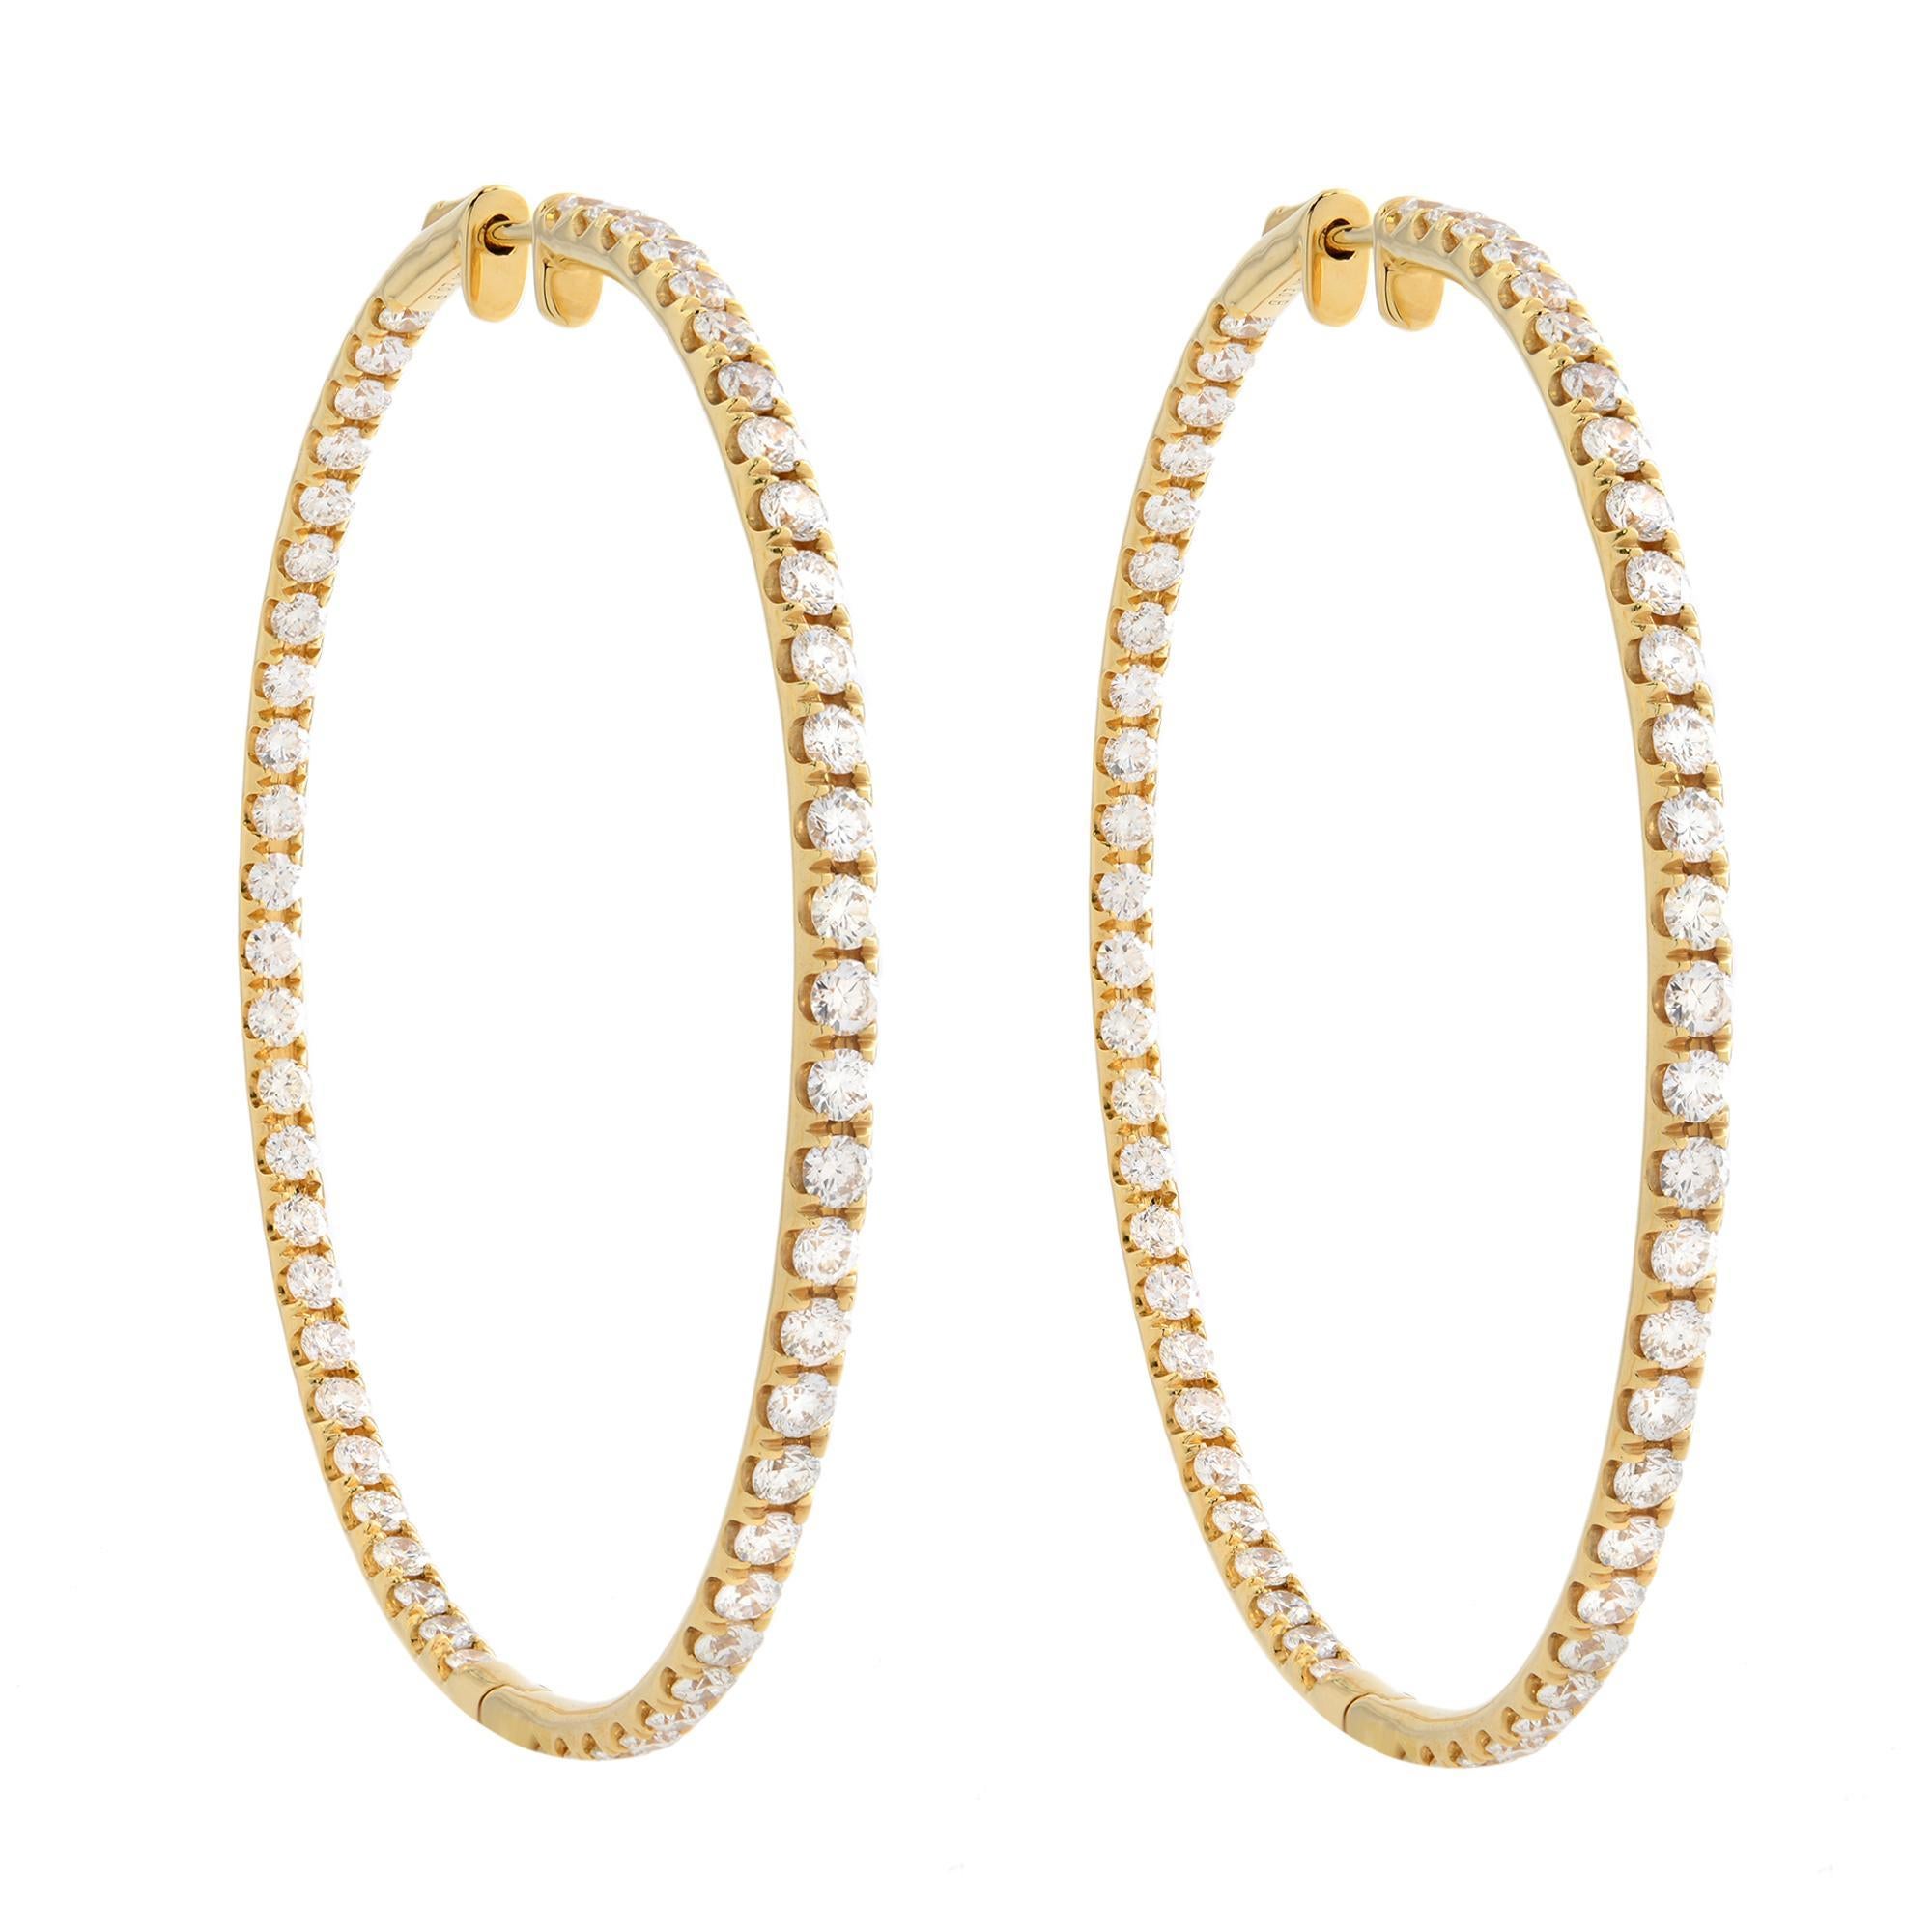 Rachel Koen Inside Out Diamond Hoop Earrings 14K Yellow Gold 1.75cttw